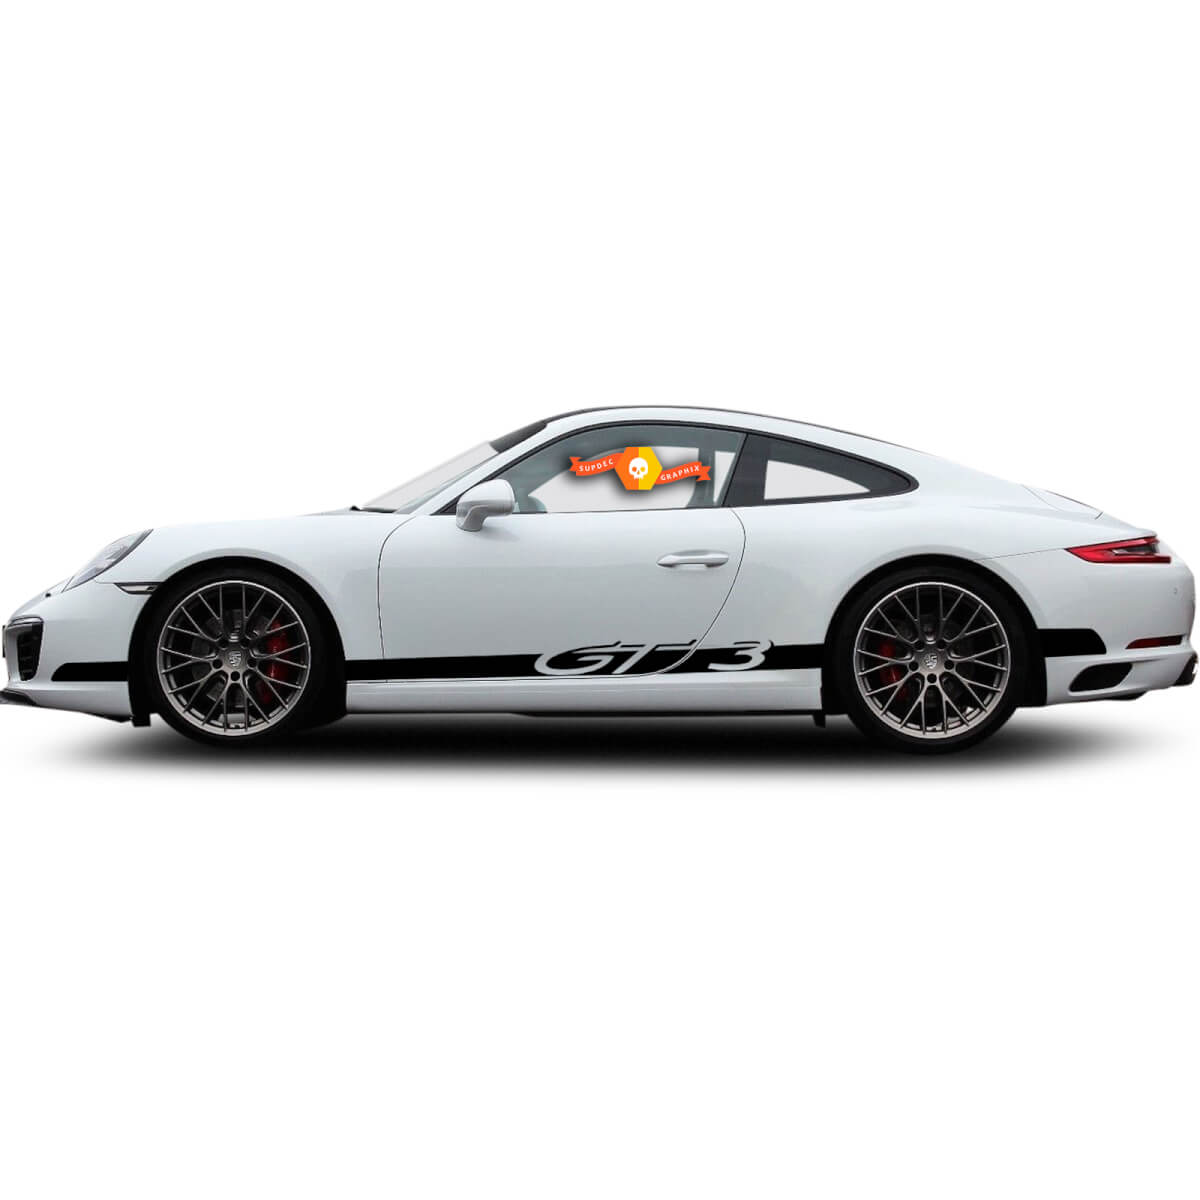 Porsche 911 GT3 CS Rocker Panel Racing Seitenstreifen Aufkleber